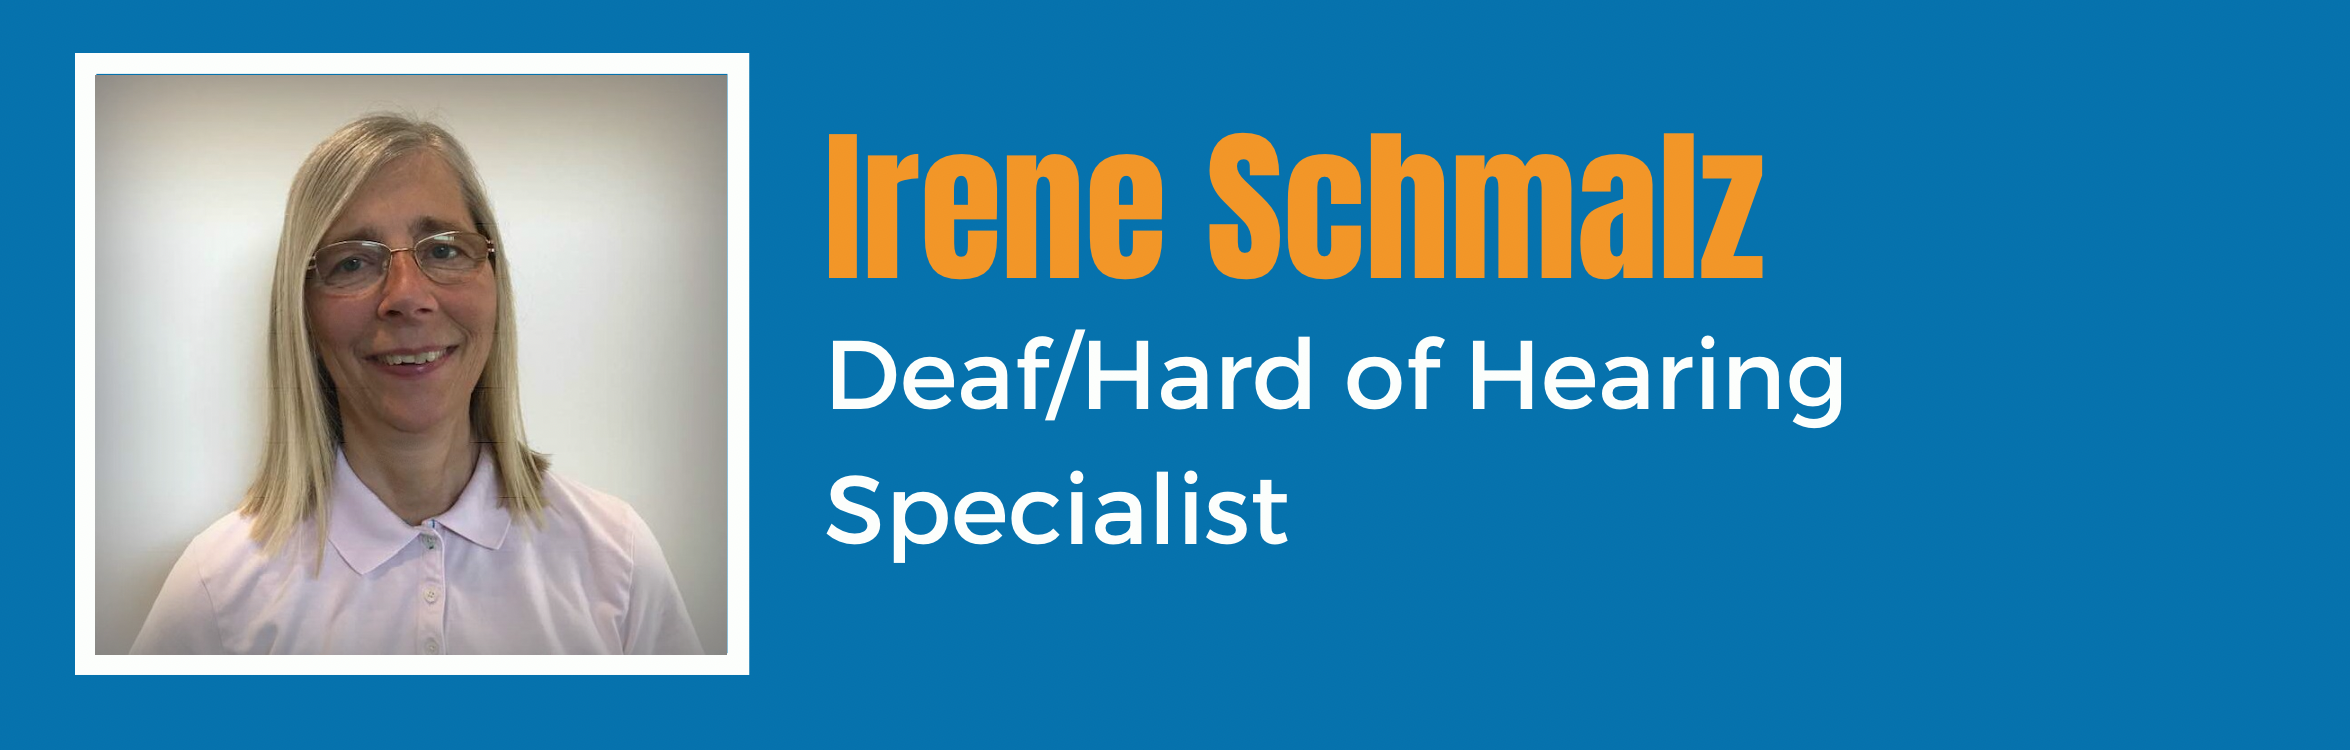 Irene Schmalz - Deaf/Hard of Hearing Specialist